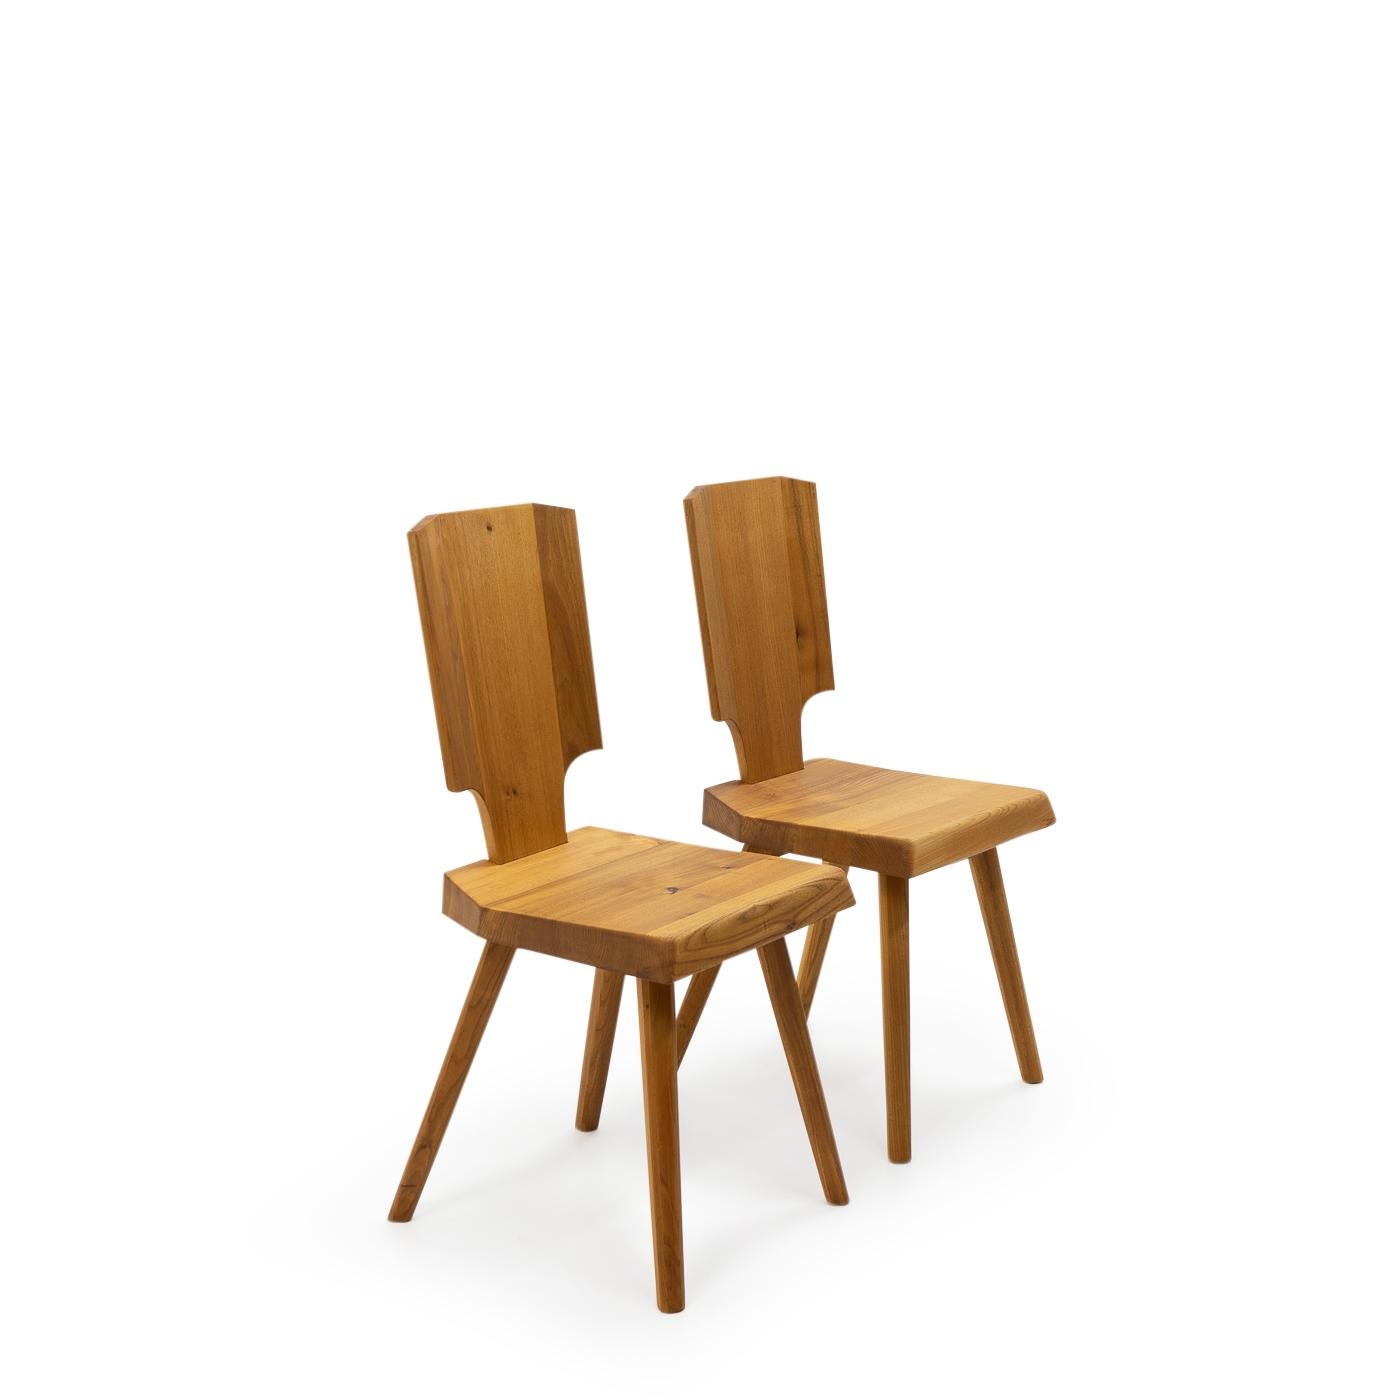 Chaises Vintage S28 en orme : Selon Pierre Chapo, la S28 est une interprétation moderne de la chaise alsacienne traditionnelle, débarrassée de tout élément décoratif, tout en conservant son confort et sa silhouette.

Comme tous les meubles de Chapo,